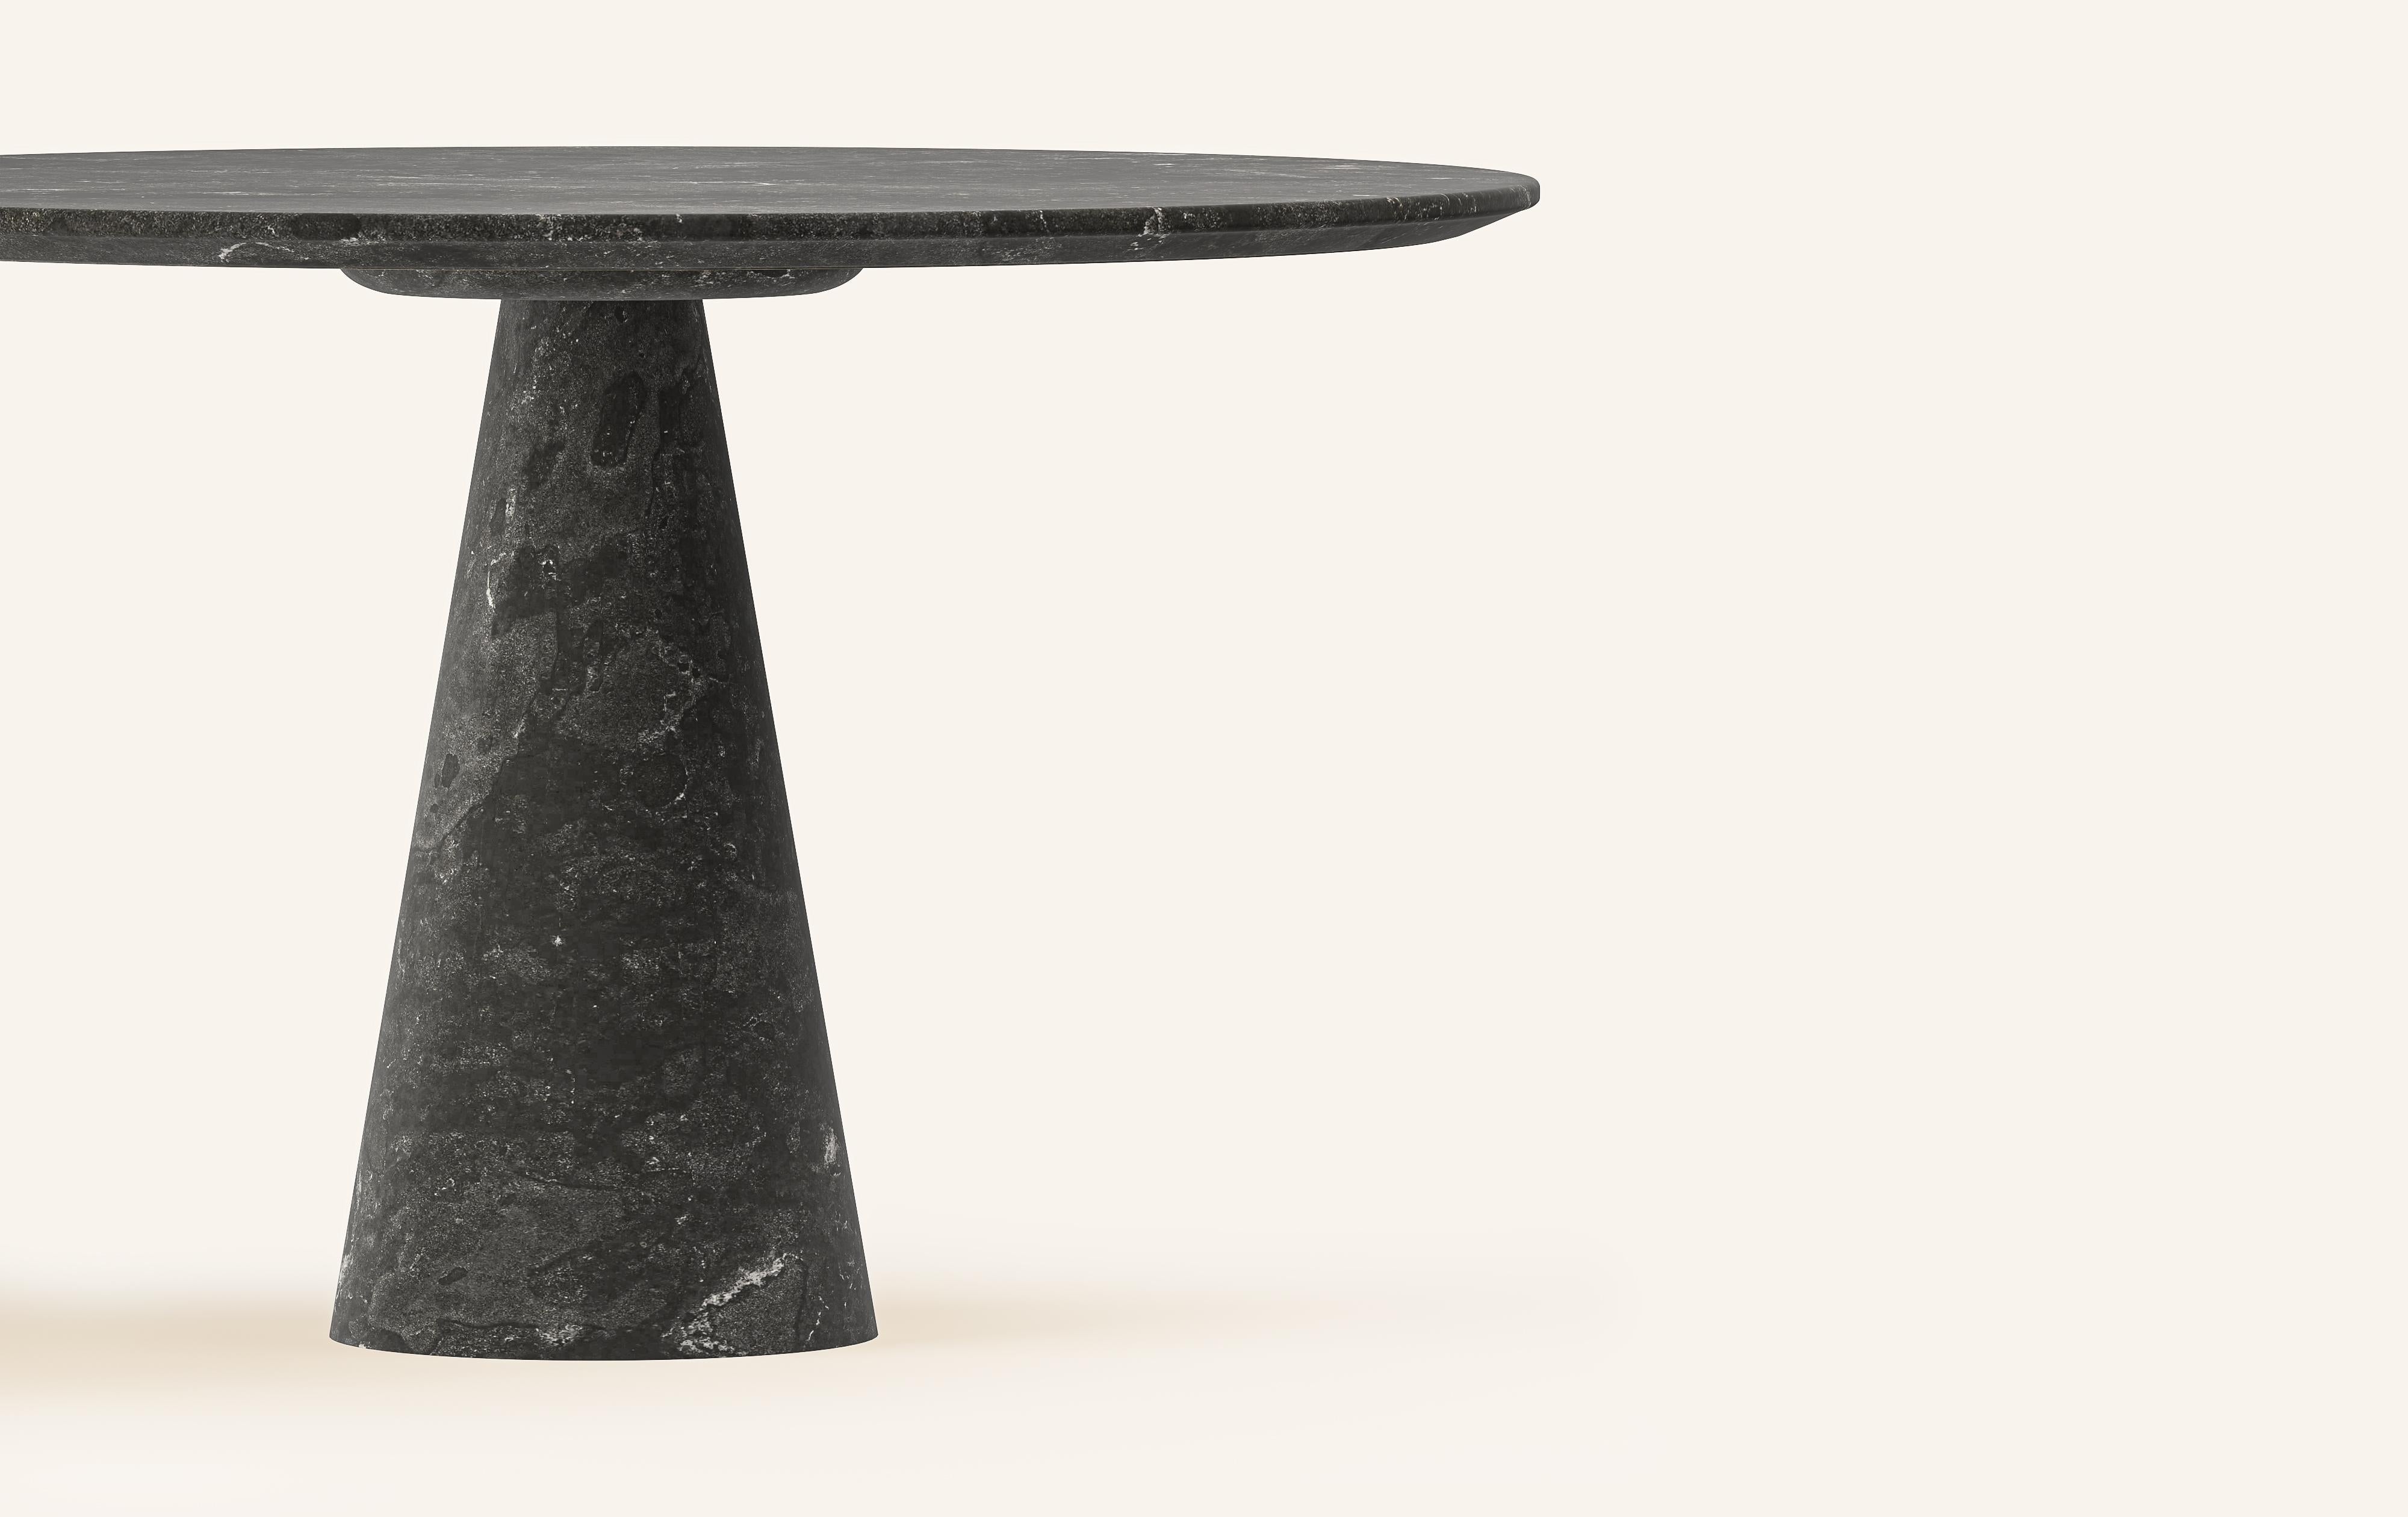 Organic Modern FORM(LA) Cono Round Dining Table 36”L x 36”W x 30”H Nero Petite Granite For Sale